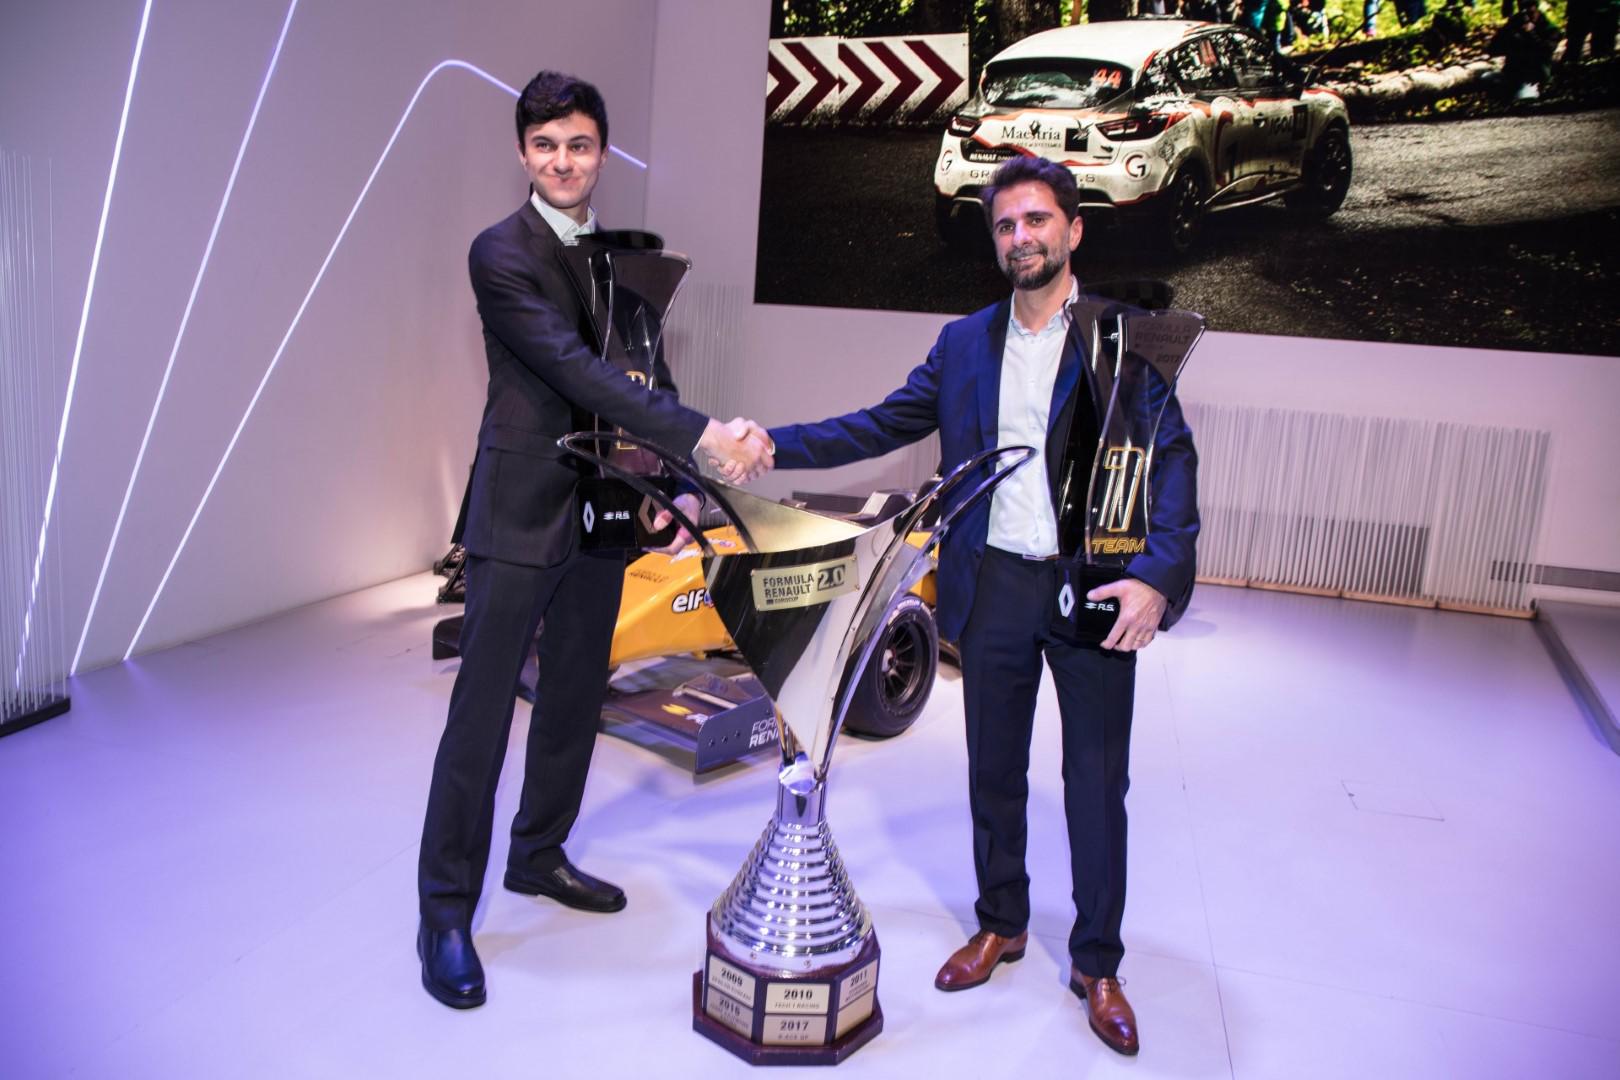 Benyahia écrit l’histoire en devenant Champion d’Europe de Formule Renault 2017 et le plus jeune pilote au monde en Formula E